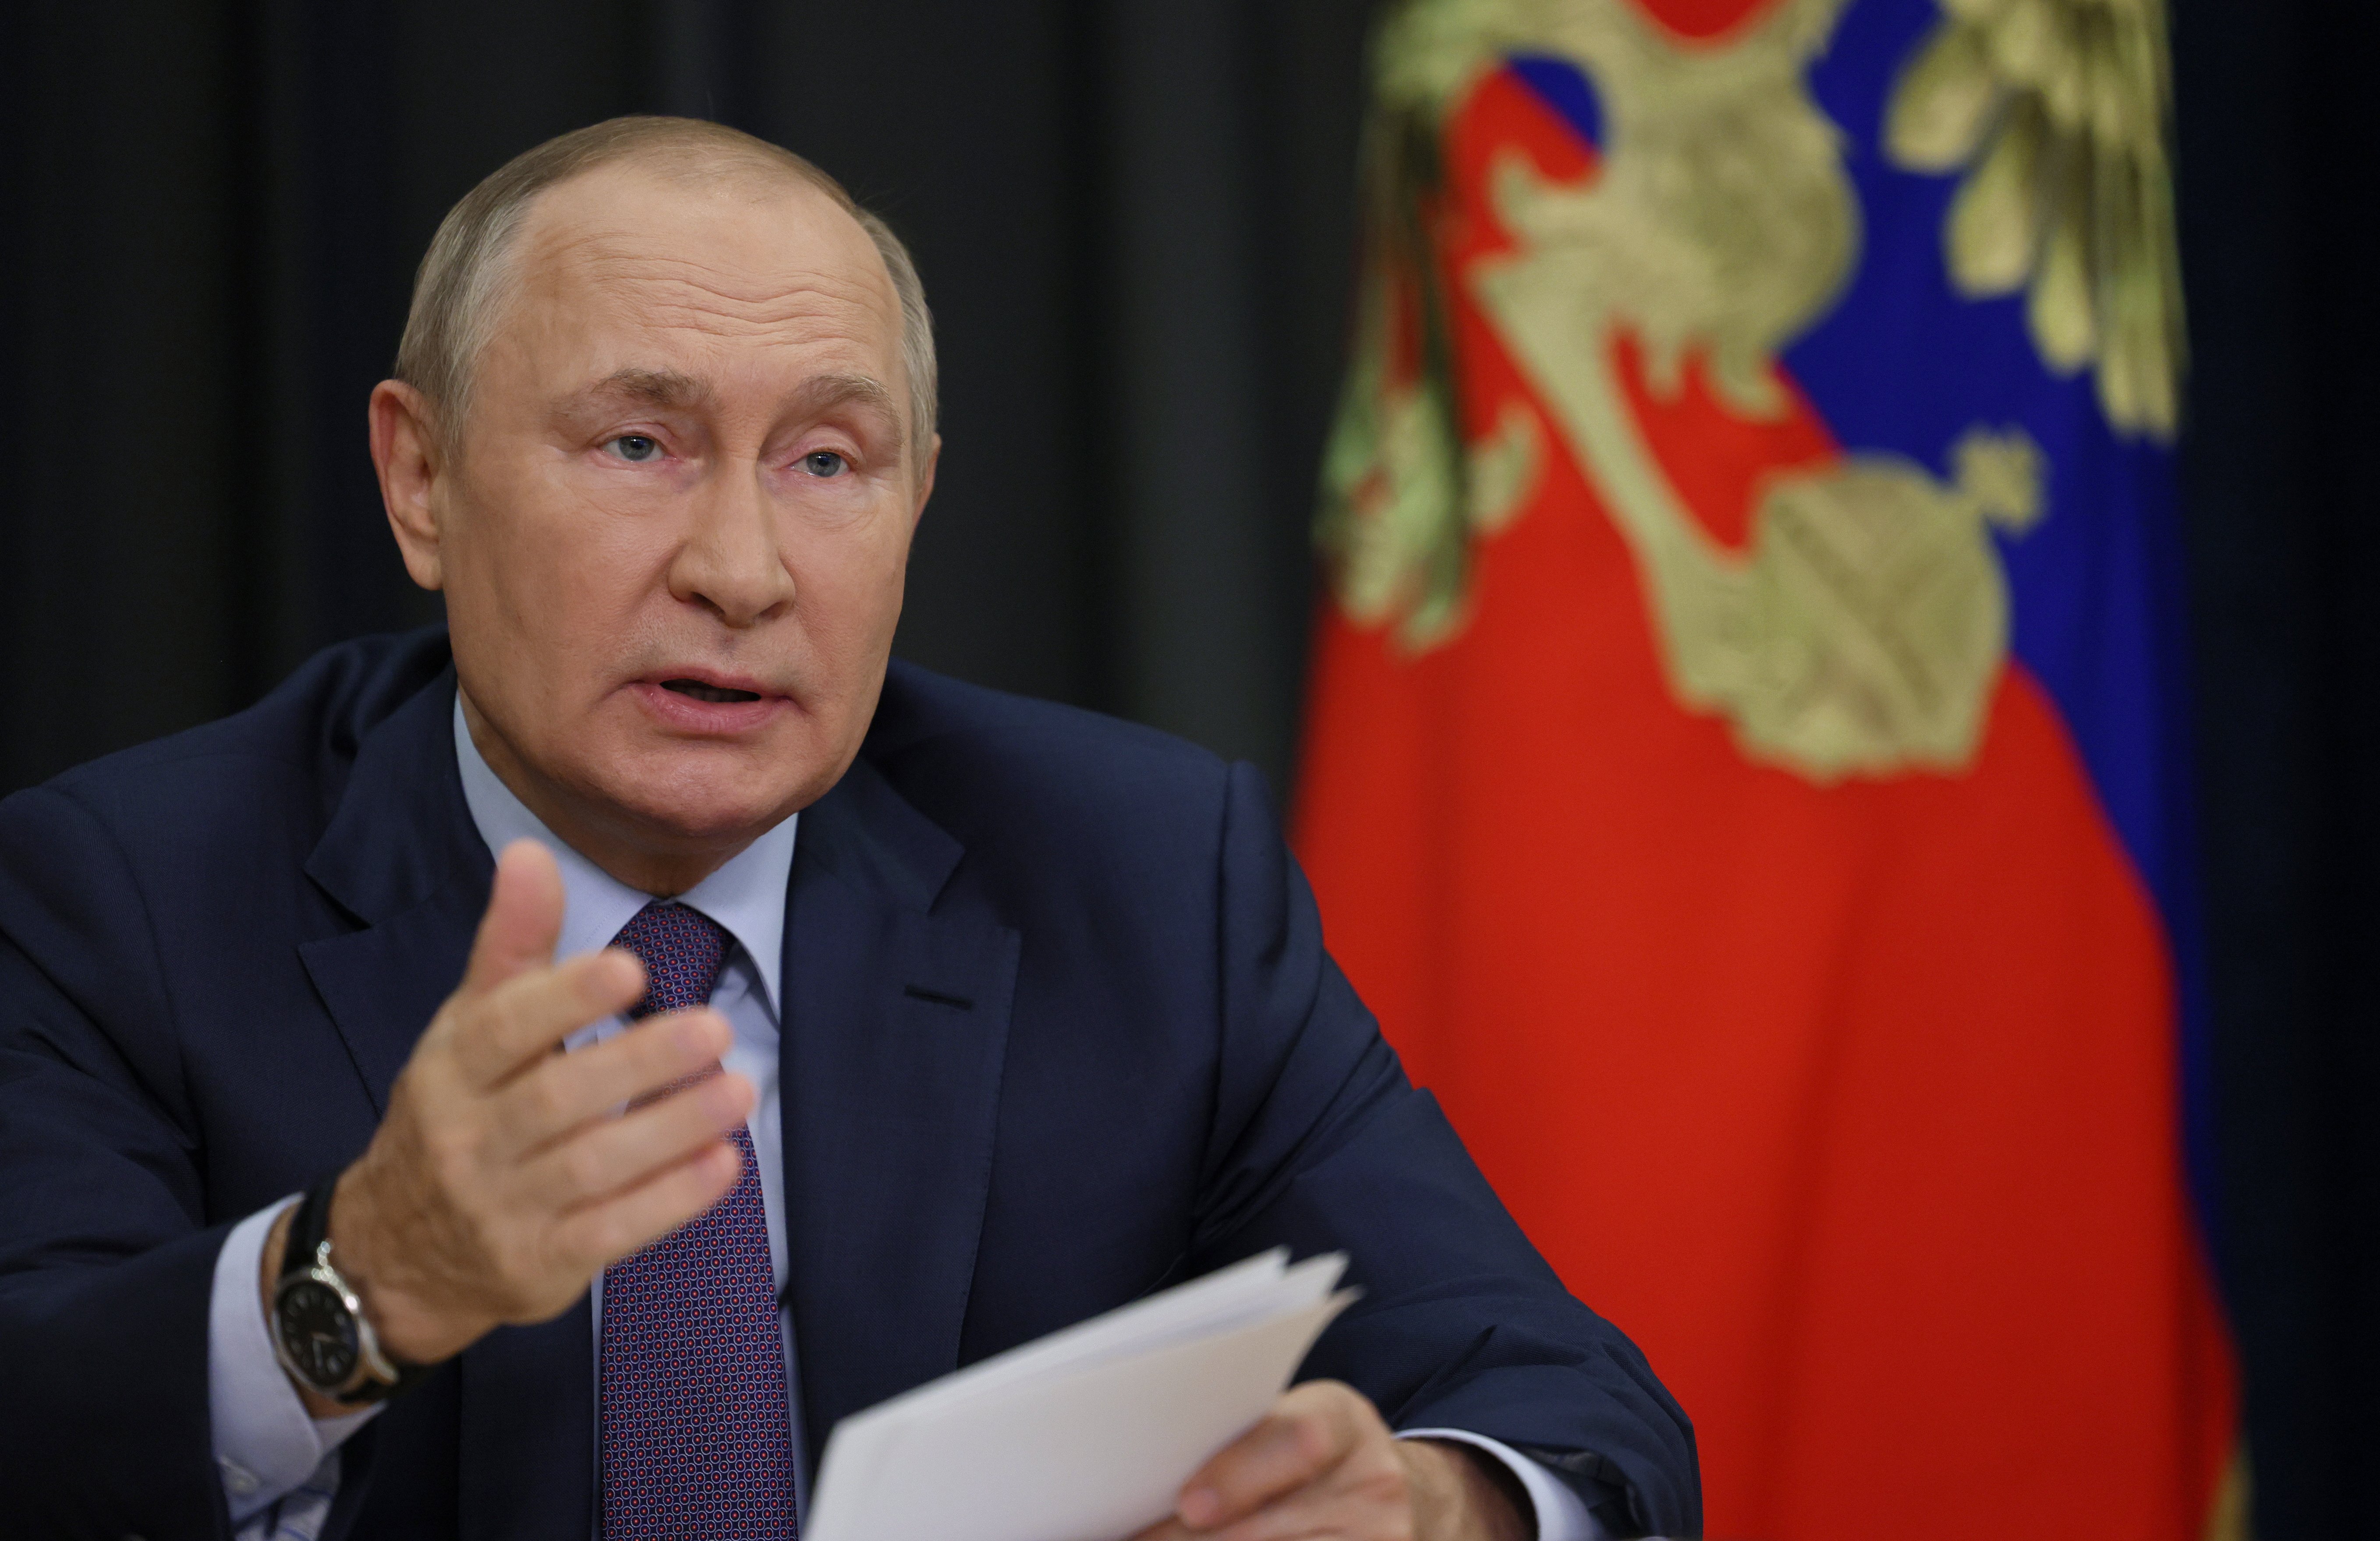 El Kremlin ho té tot a punt per annexionar-se regions d'Ucraïna: Putin ho anunciaria el 30 de setembre